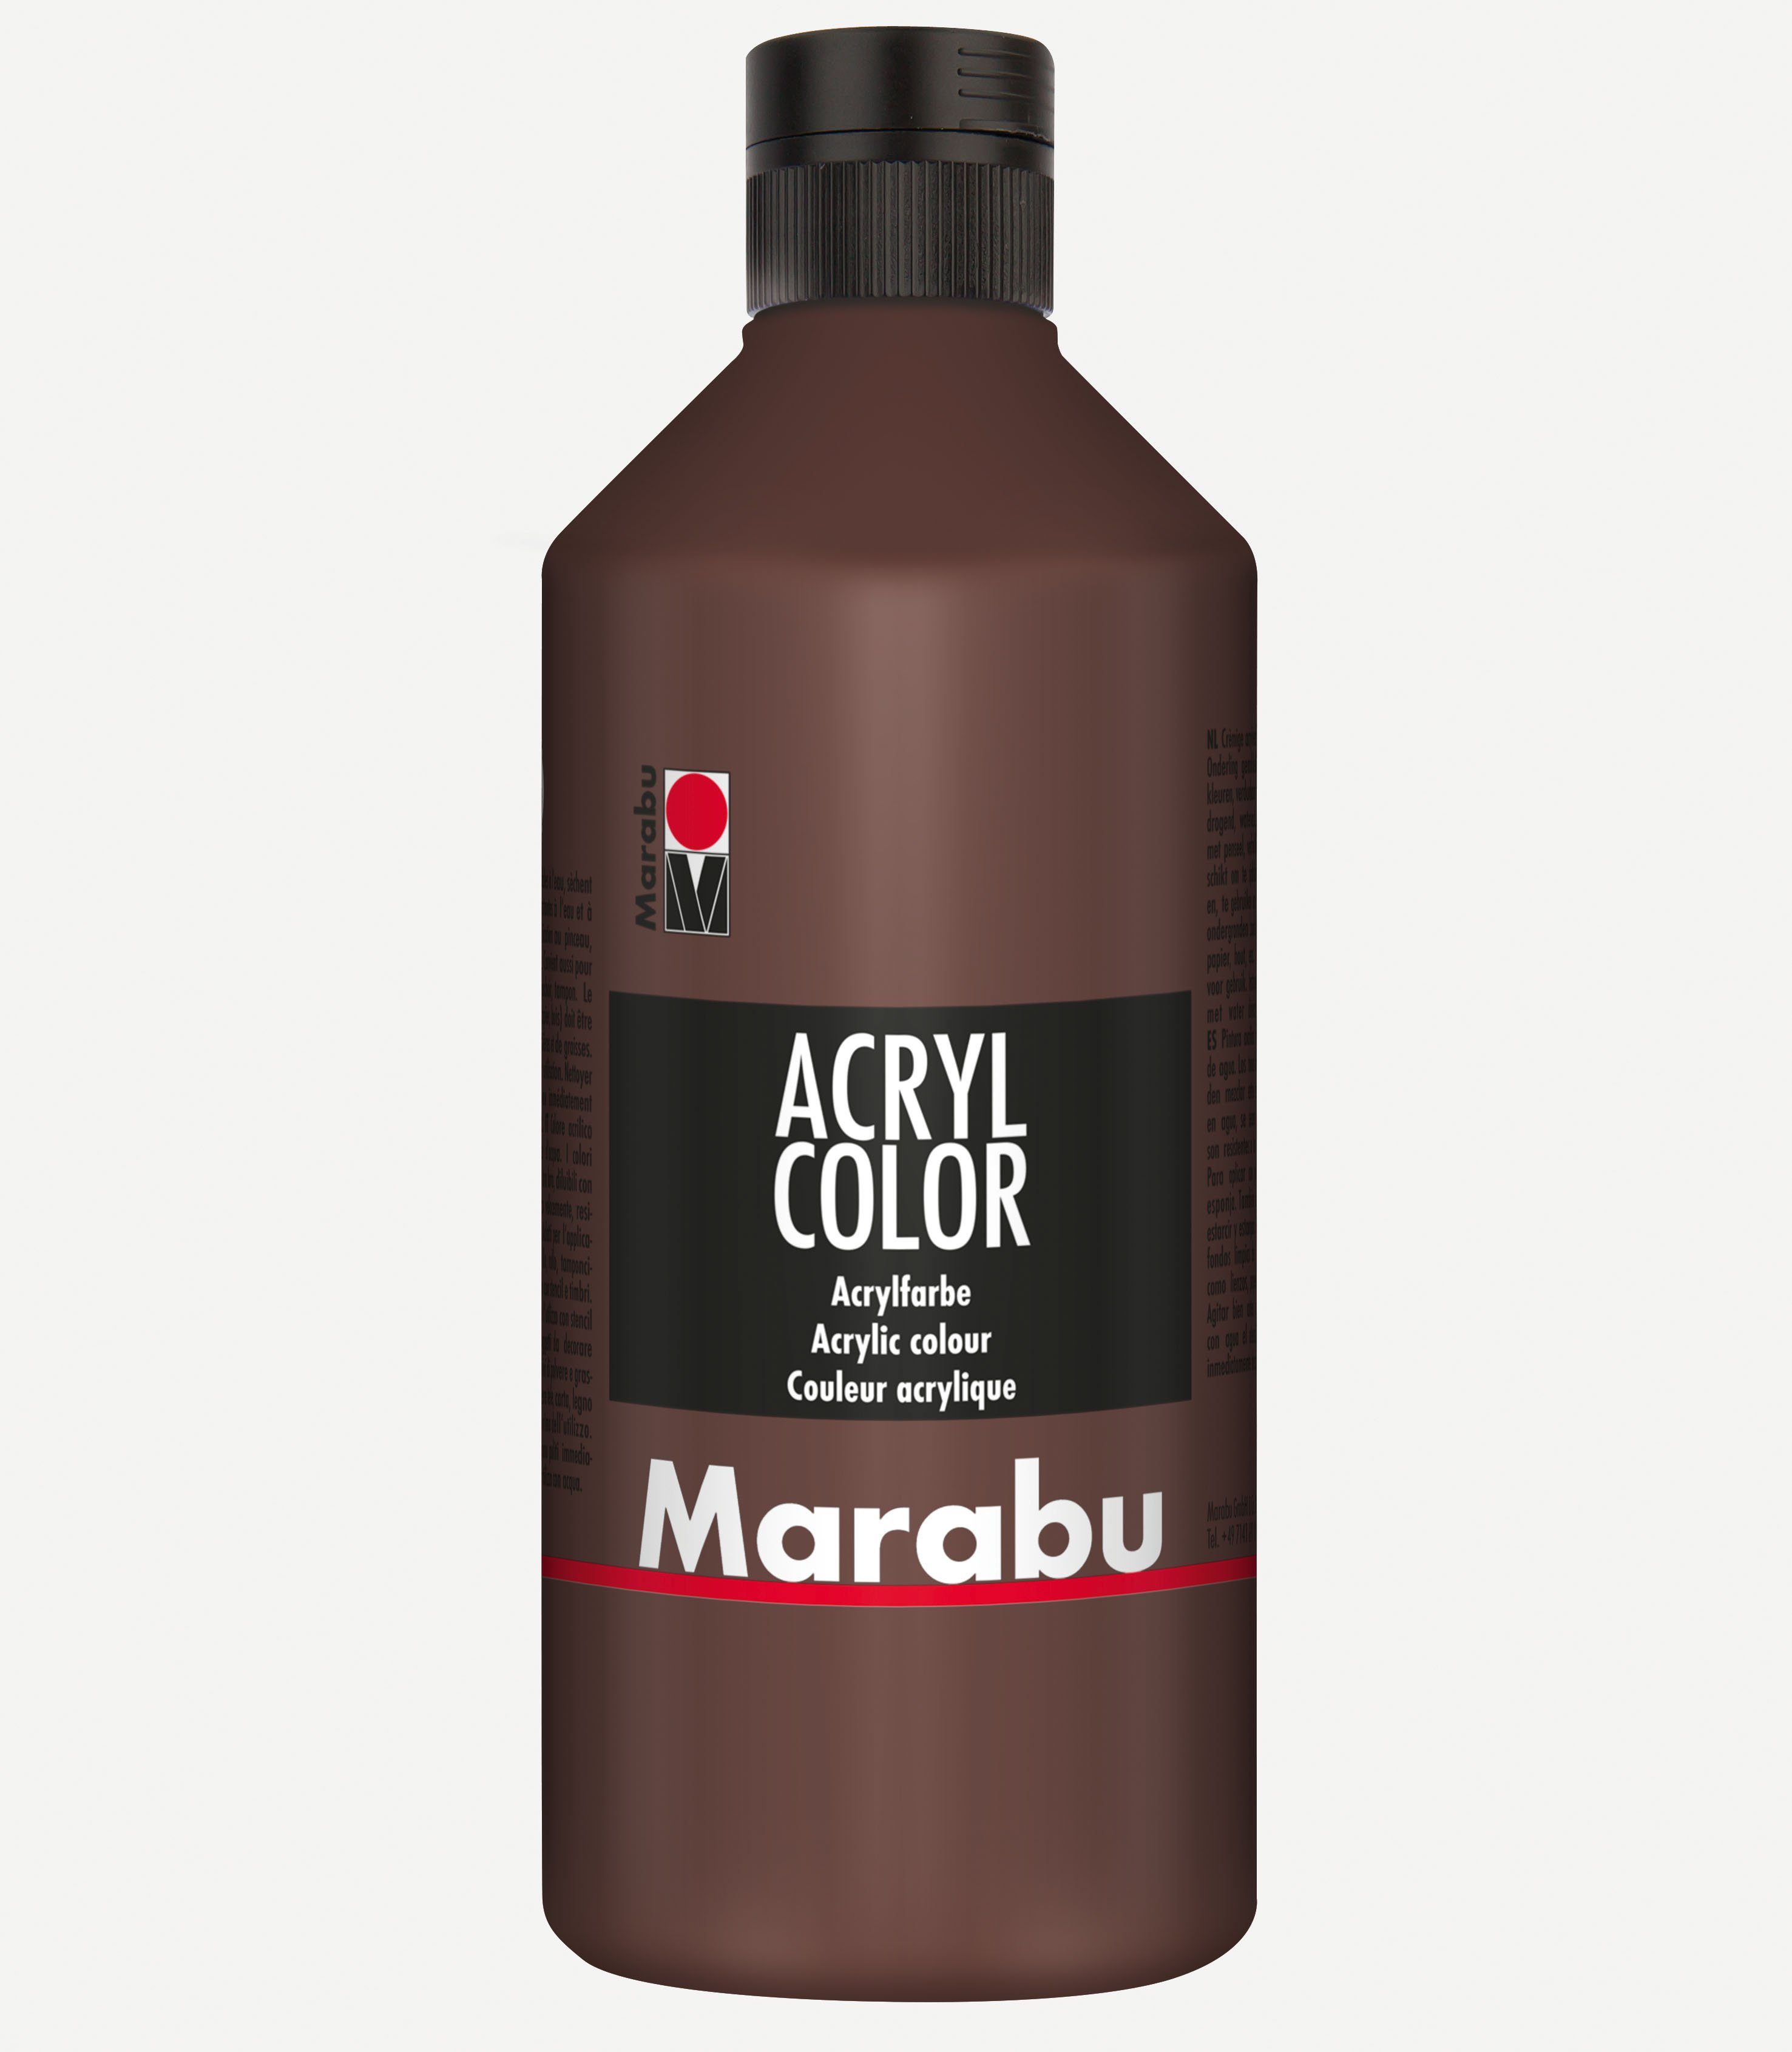 Marabu Acrylfarbe Marabu Acrylfarbe Acryl Color, 500 ml, mittelbraun 040